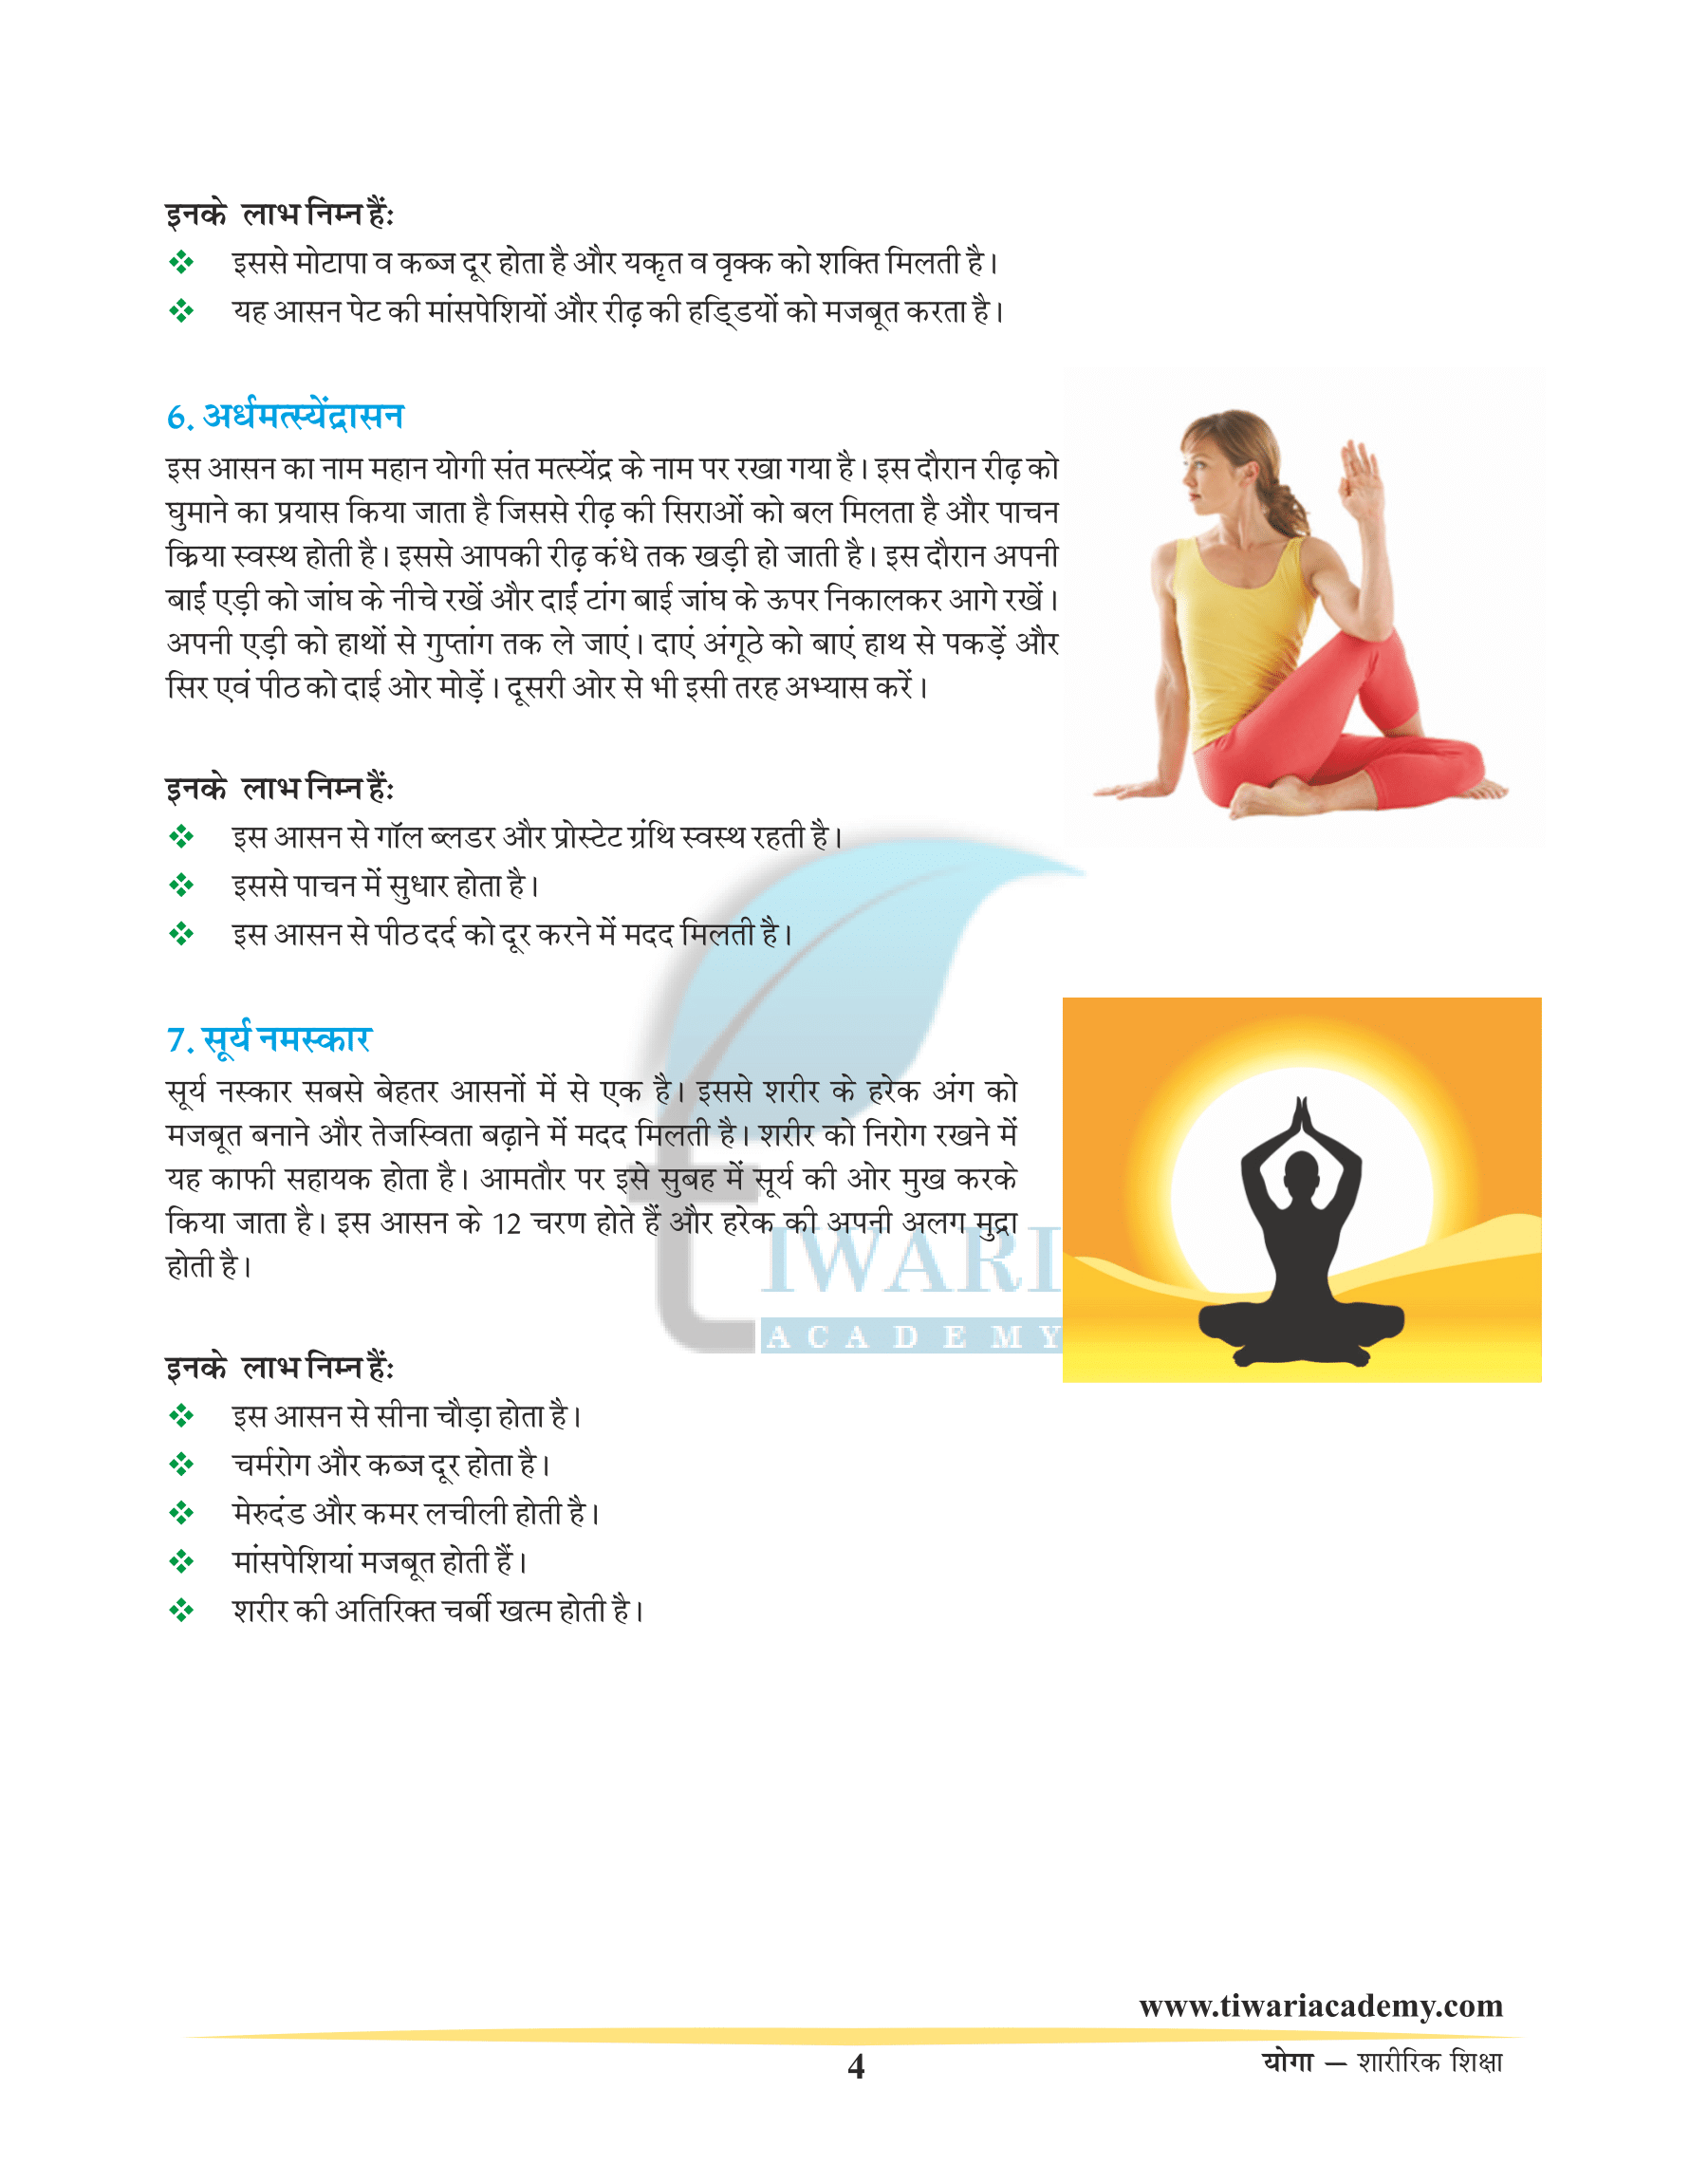 Yoga and Yoga uses